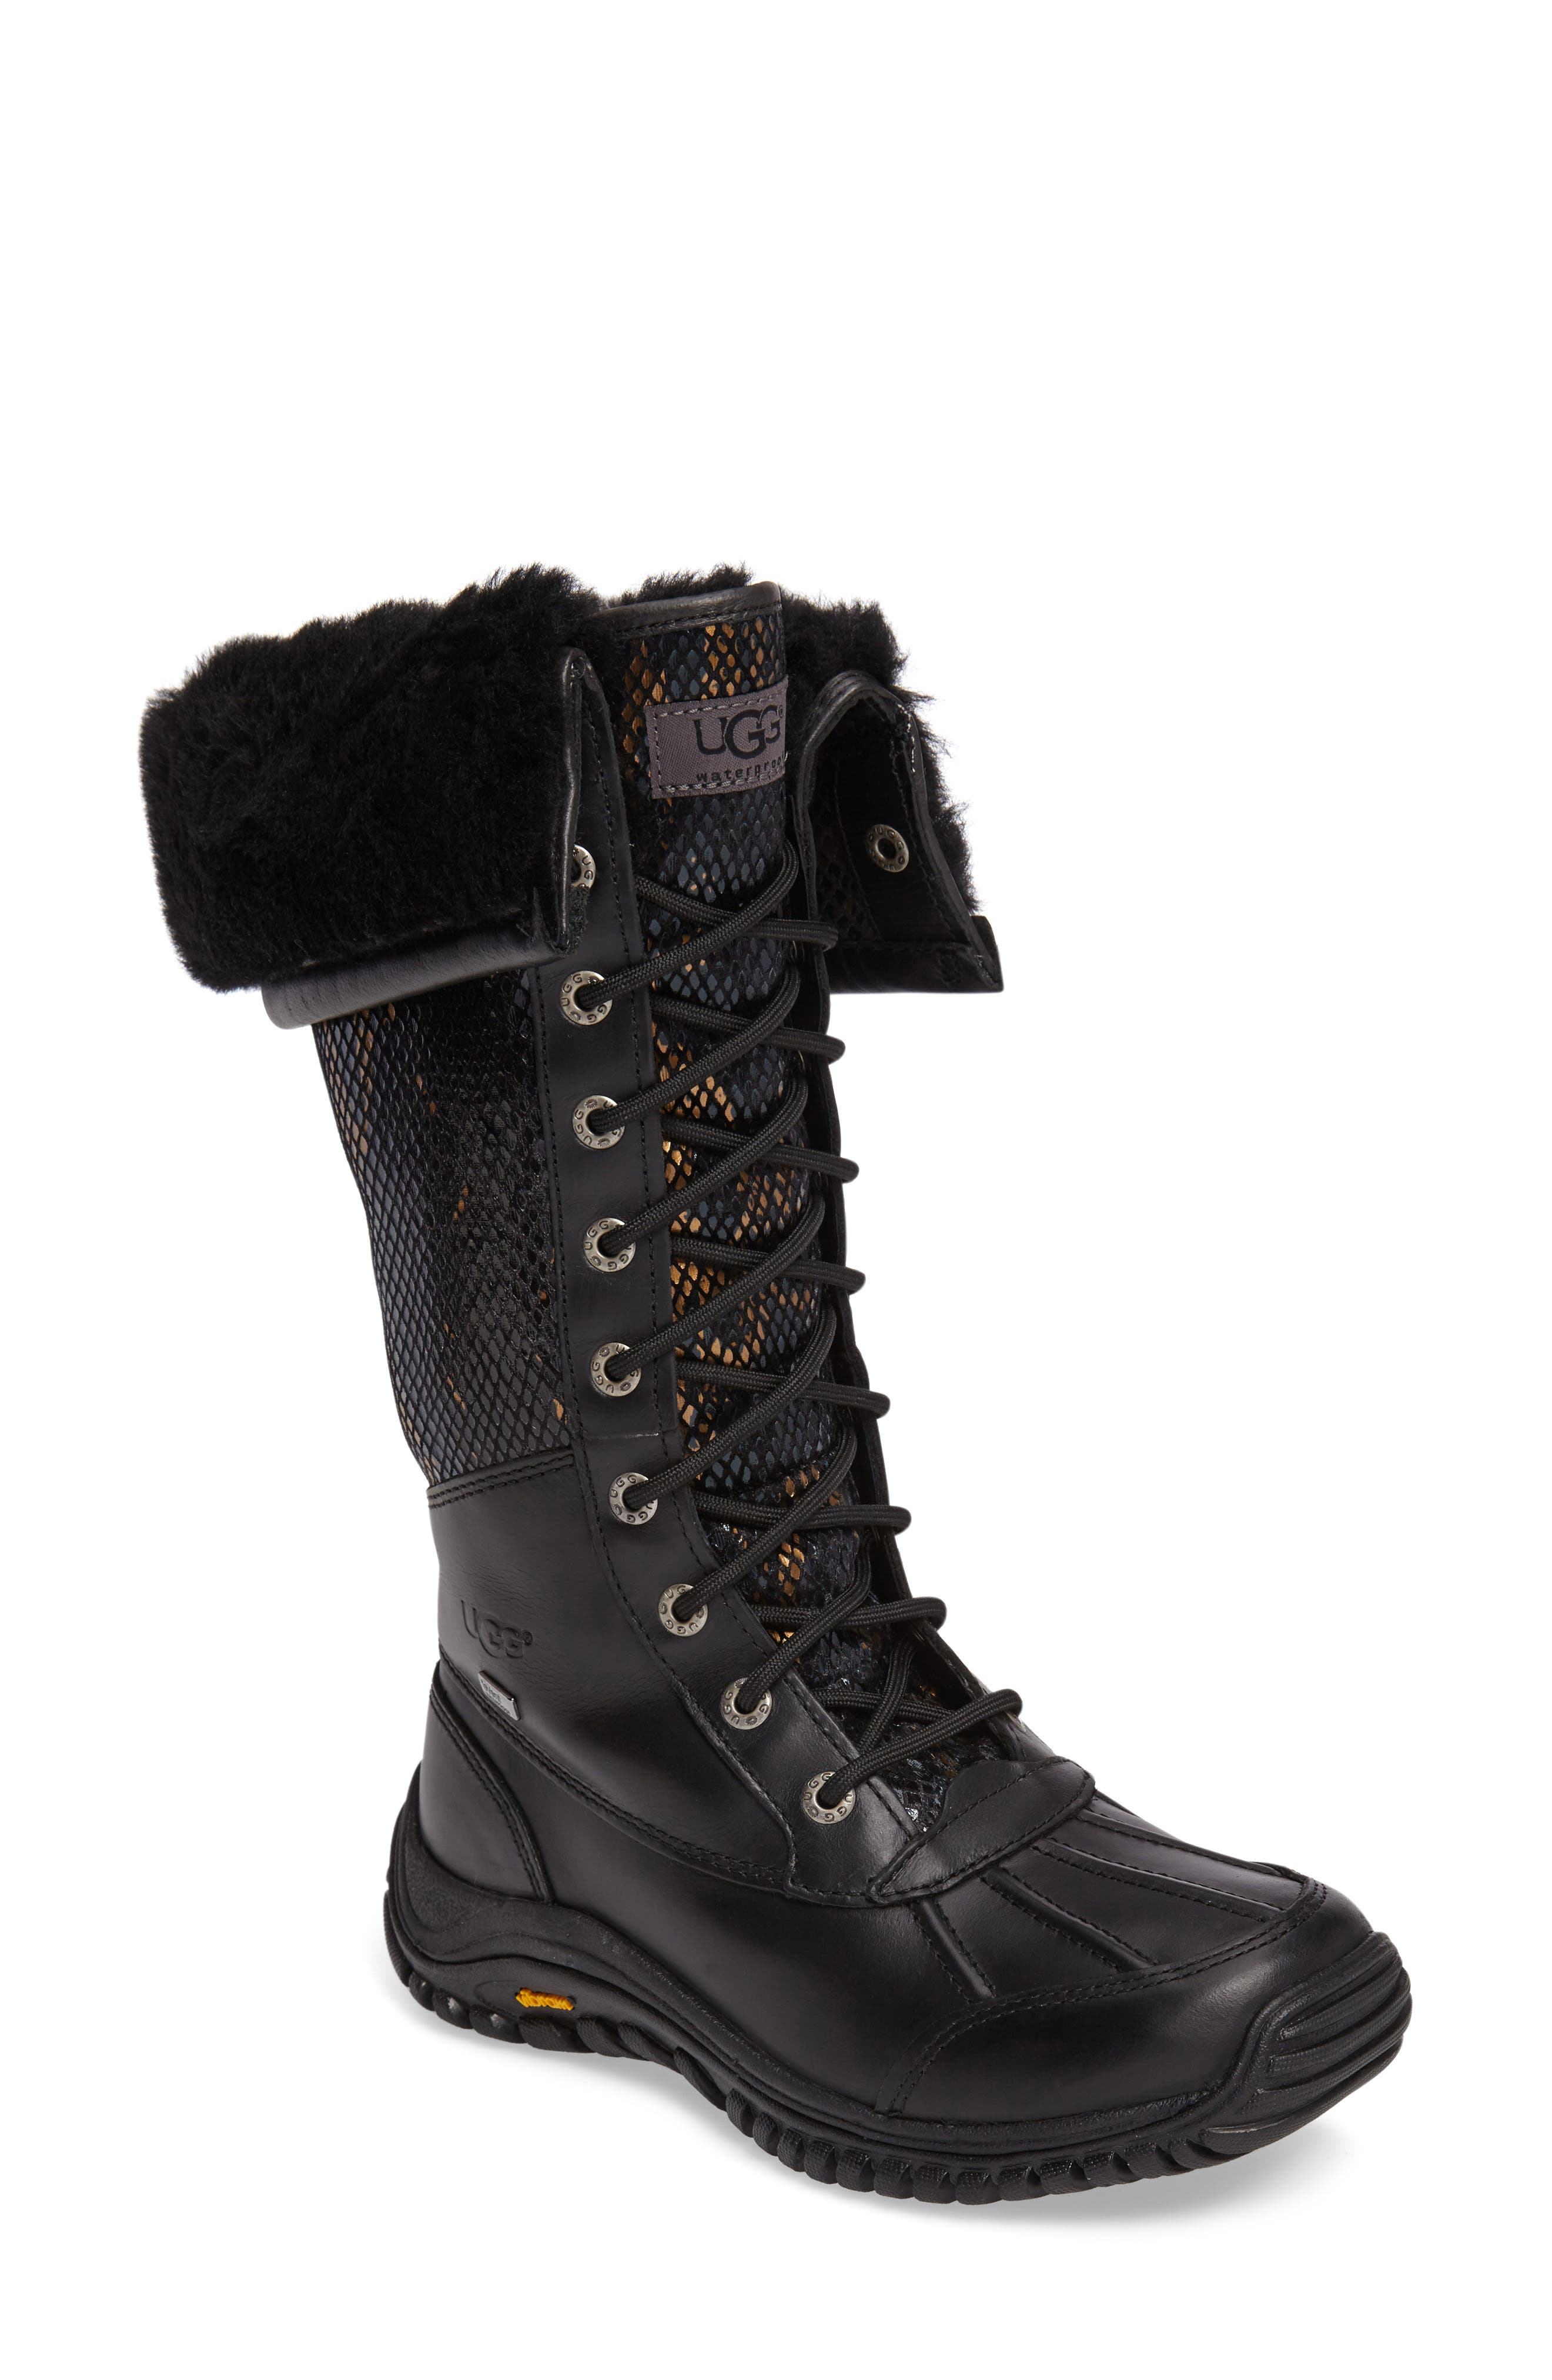 ugg adirondack tall winter boots womens